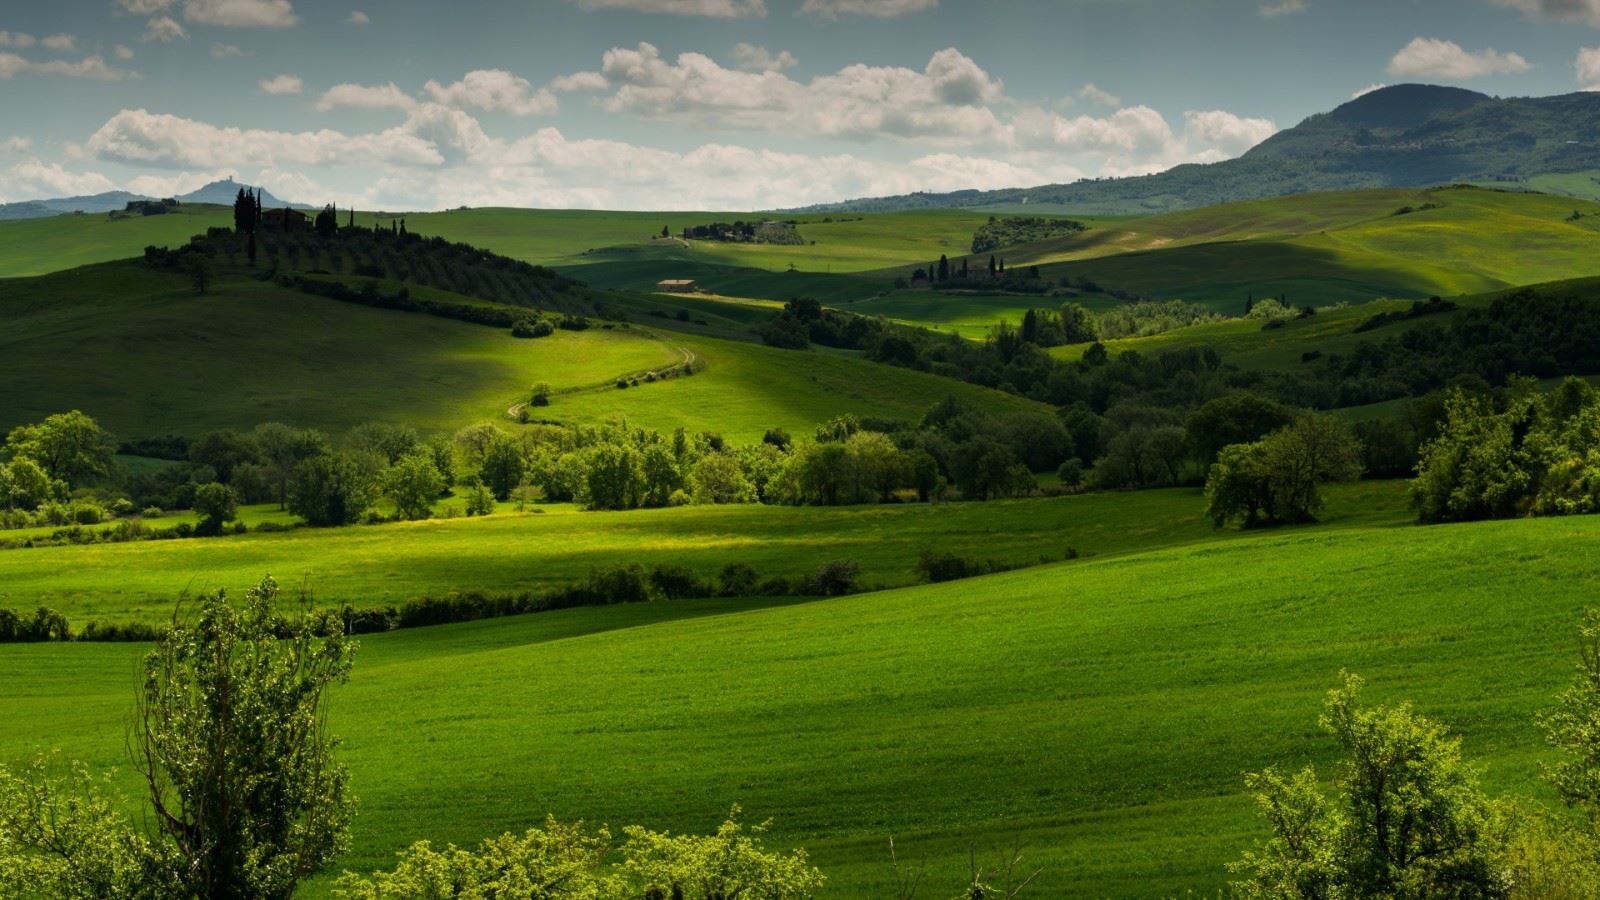 意大利托斯卡纳地区,绿色草地,田野的树木,风景桌面图片